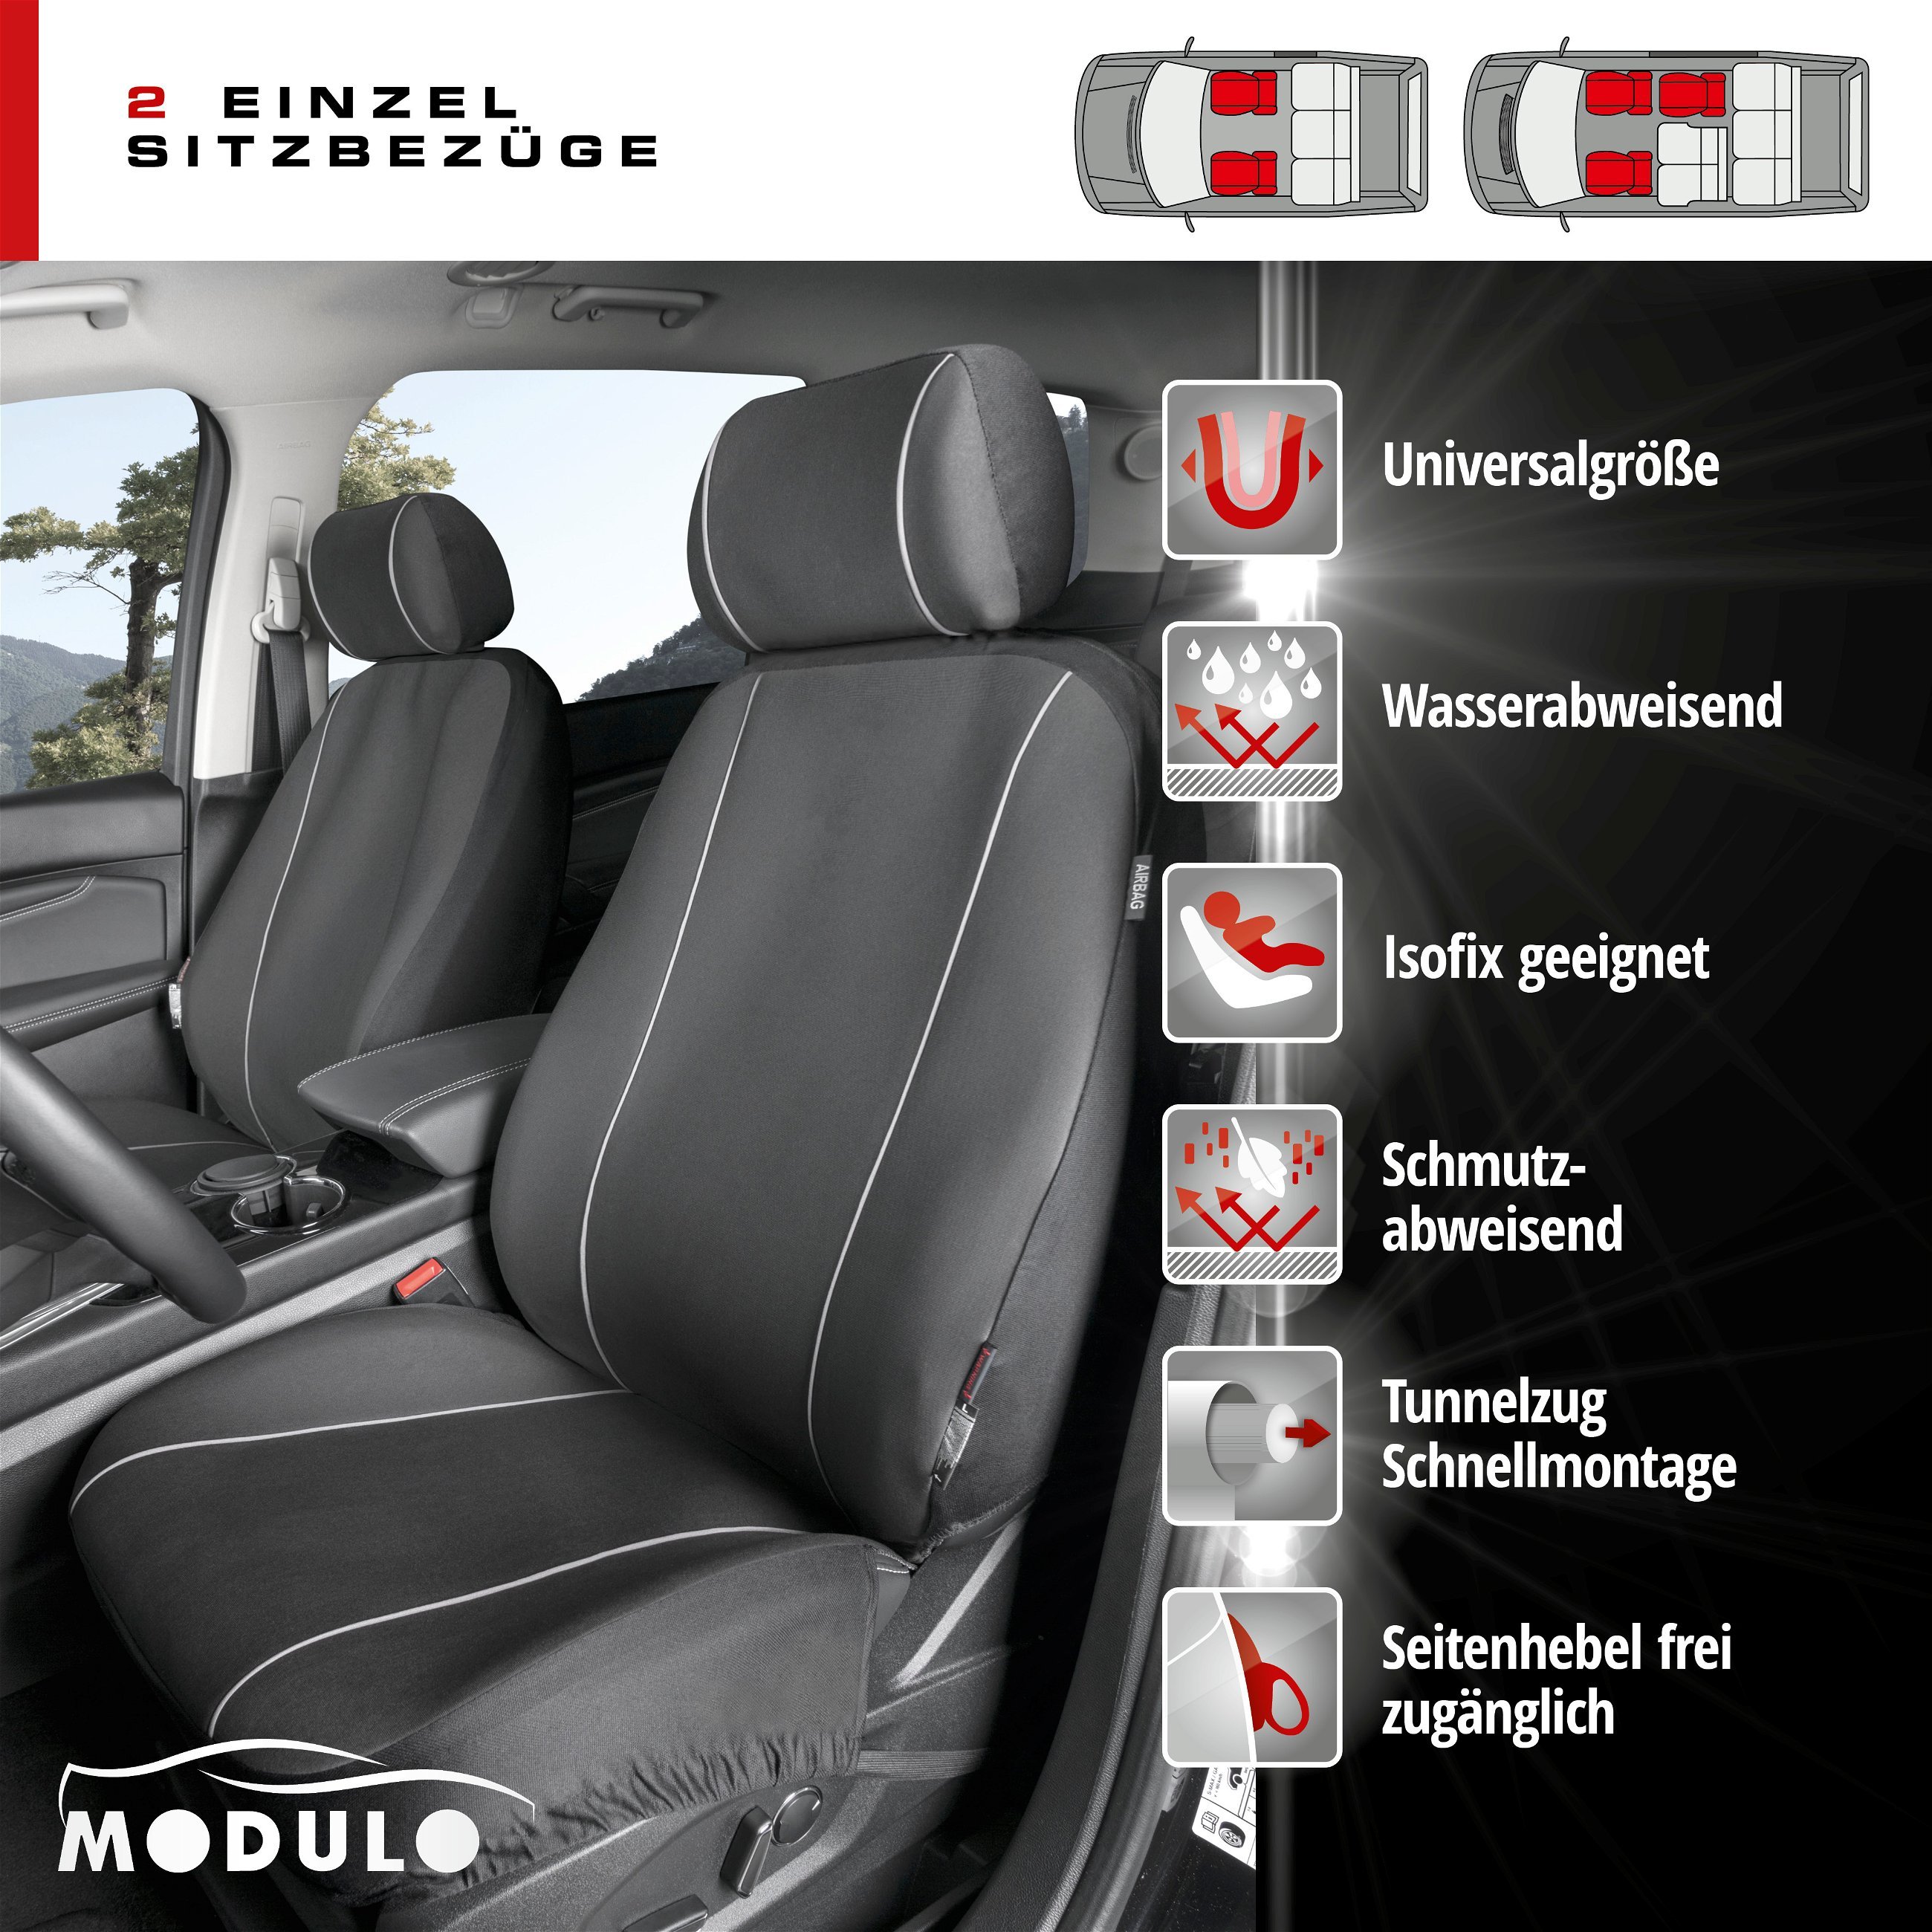 MERCEDES CLASSE A gris Universal Sitzbezüge Housse De Siège Auto Housses de protection Superior 